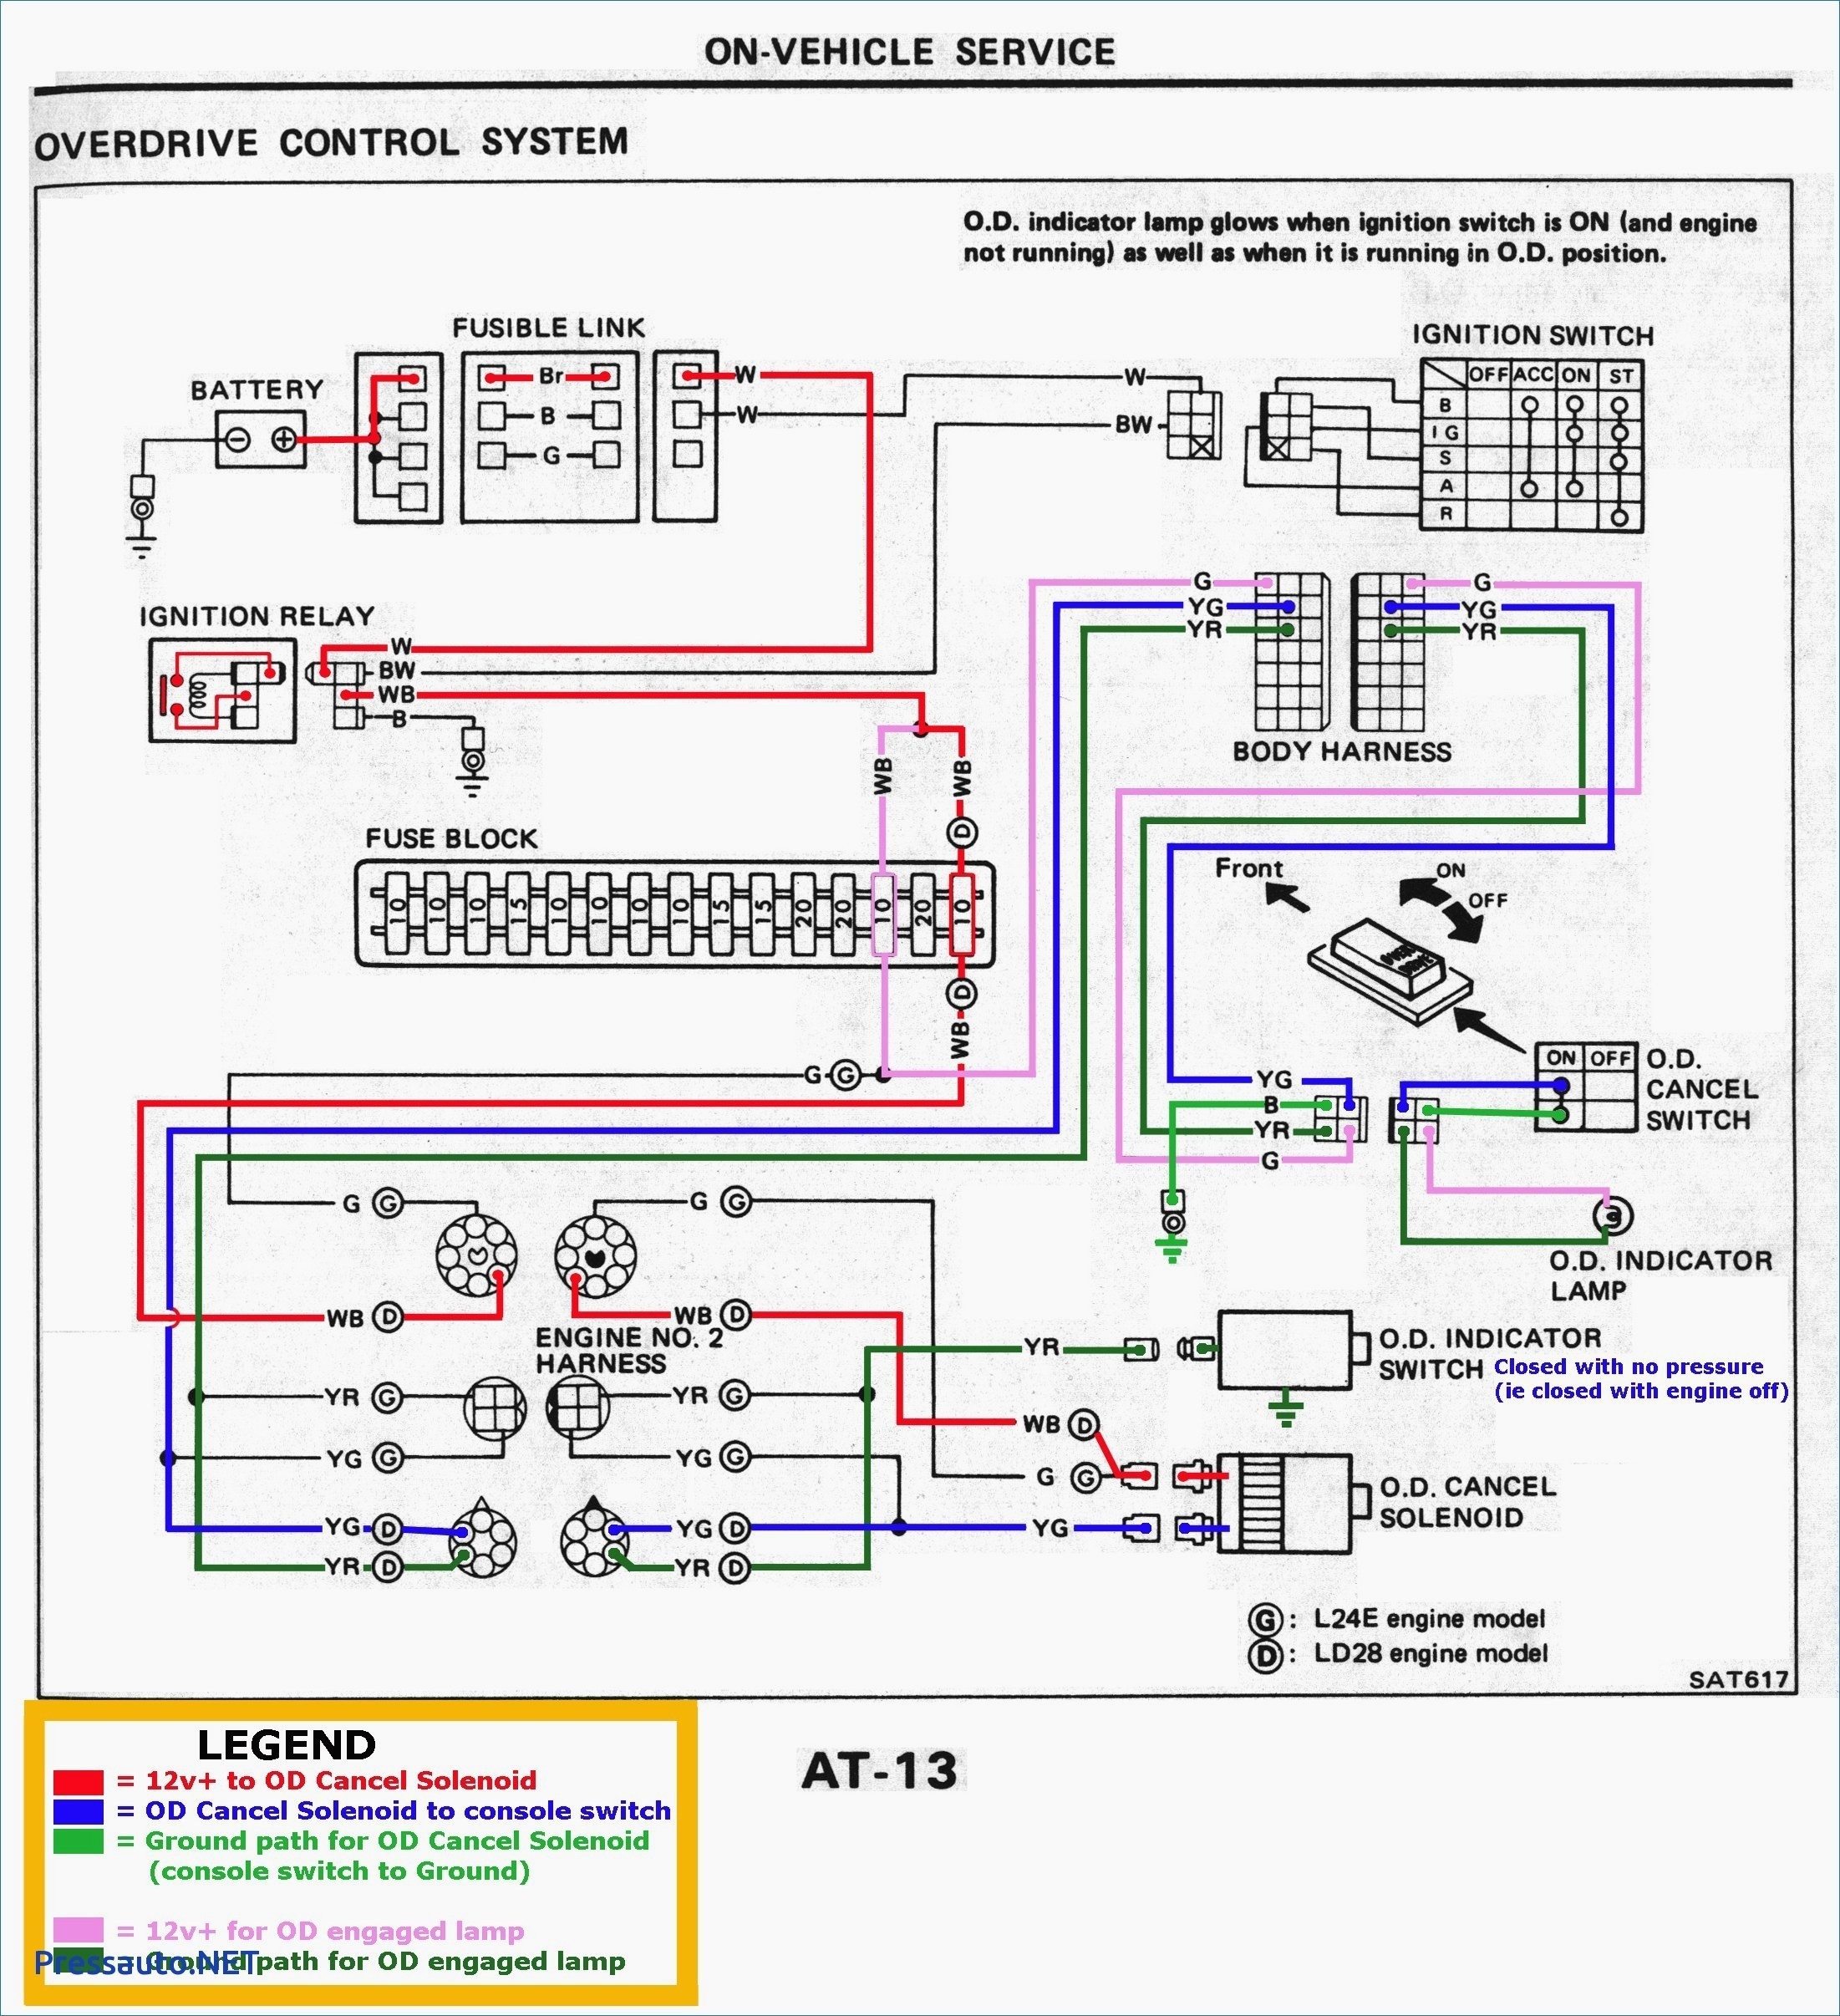 2003 Chevy Silverado Engine Diagram 2003 Silverado Fuse Box Wiring Diagram Wiring Diagram toolbox Of 2003 Chevy Silverado Engine Diagram